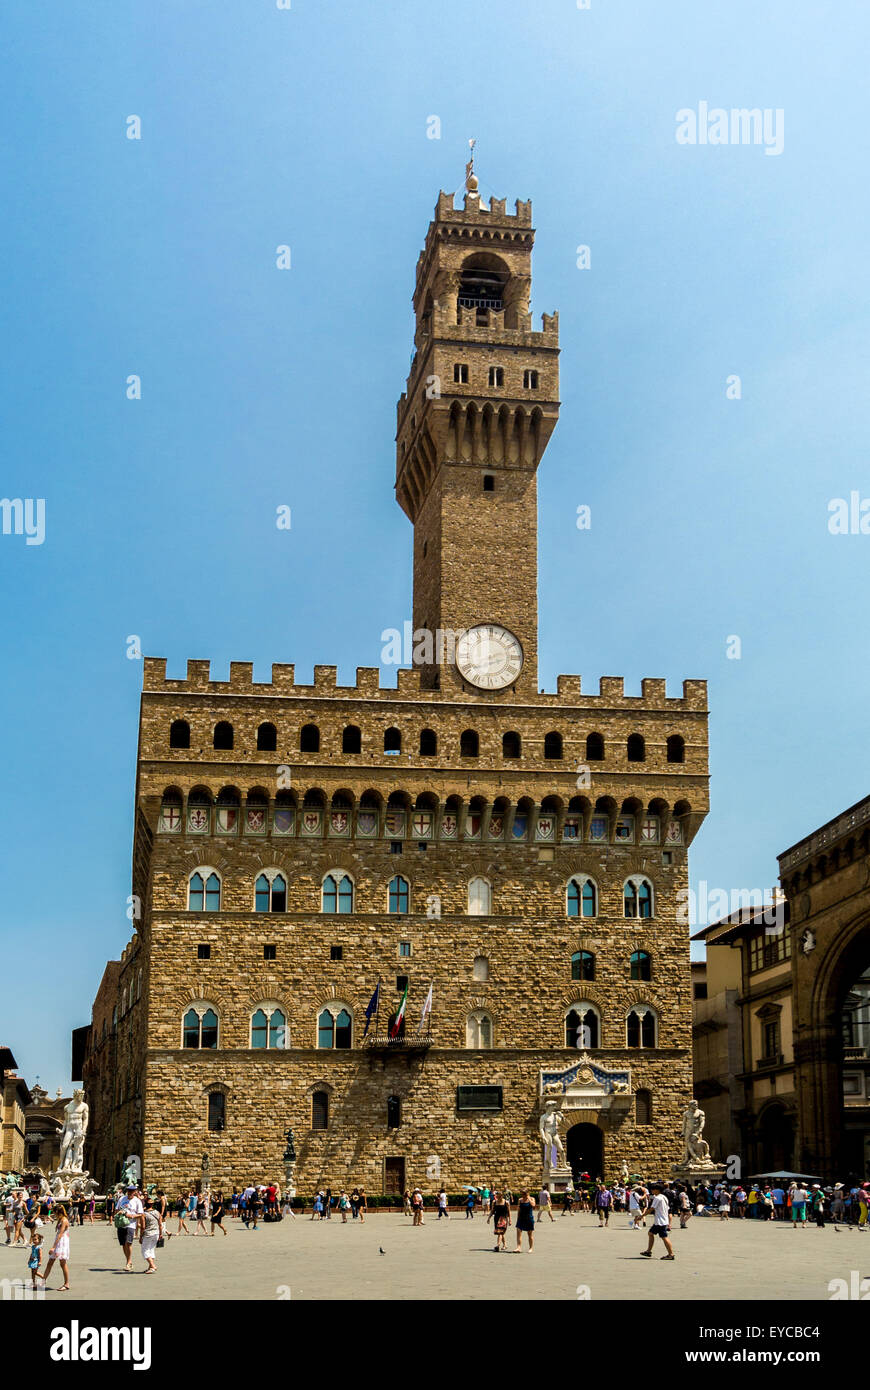 Palazzo Vecchio overlooking  Piazza della Signoria. Florence. Italy. Stock Photo